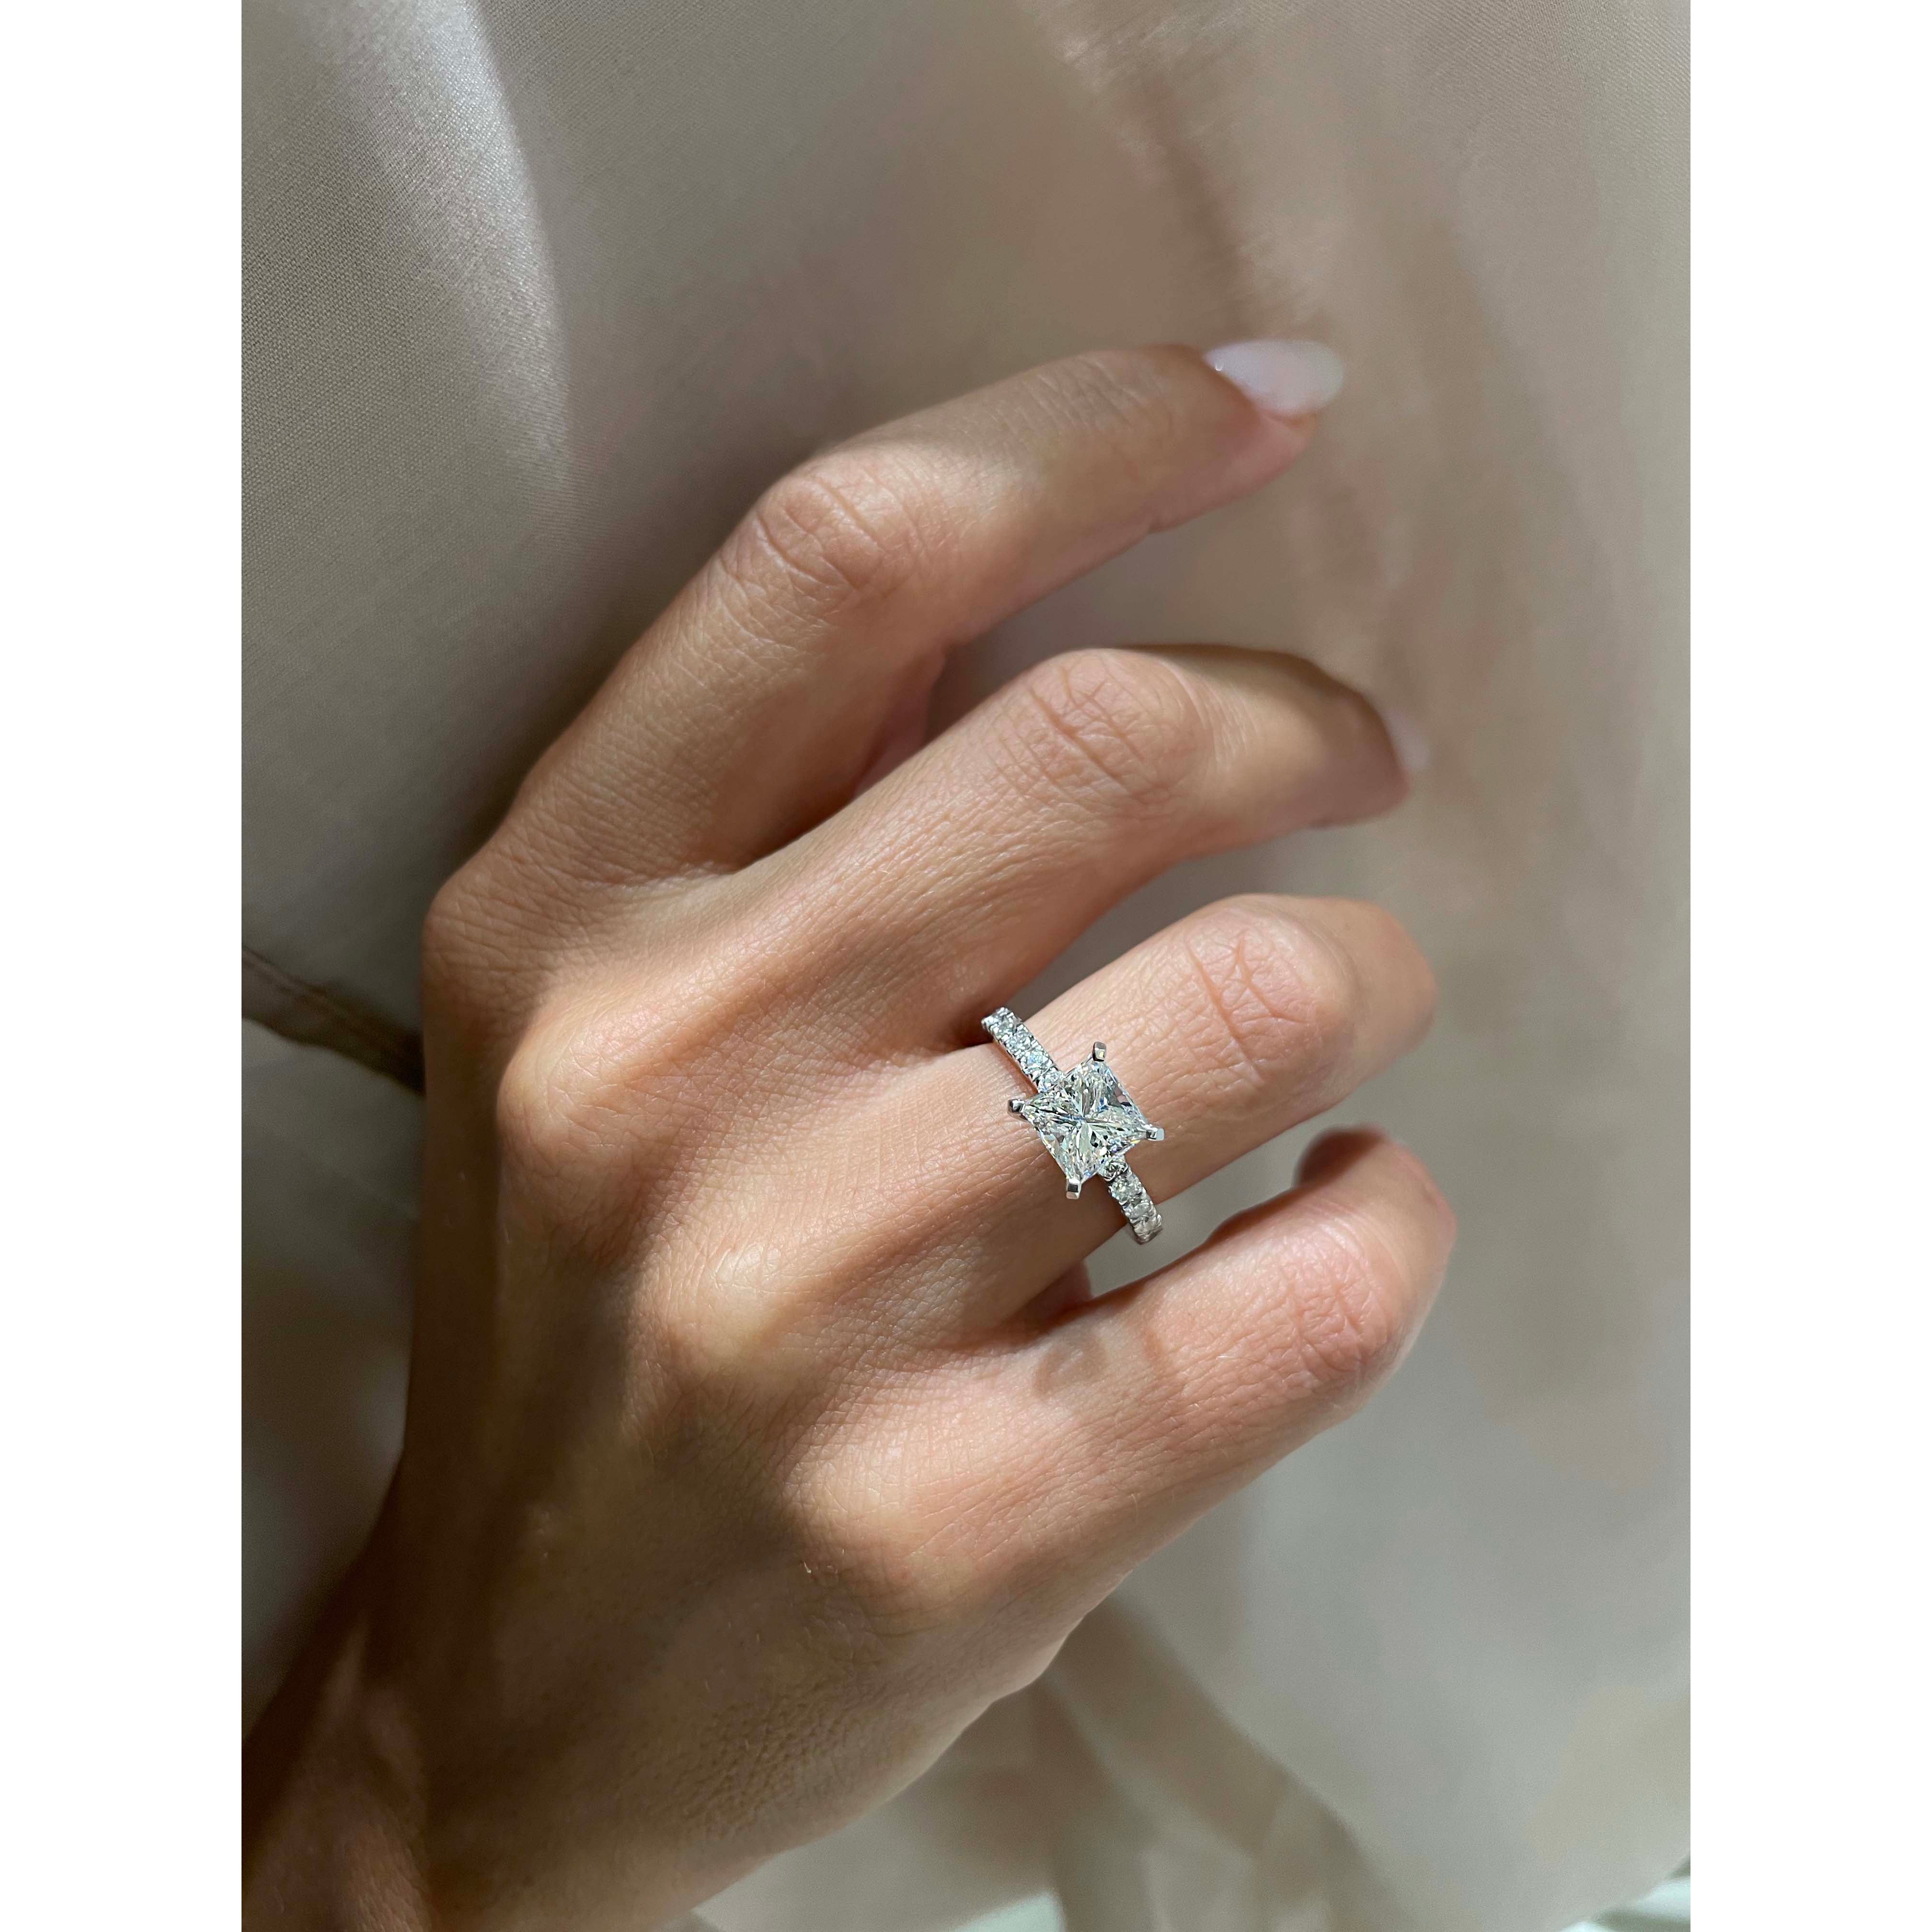 Blair Diamond Engagement Ring   (2 Carat) -14K White Gold